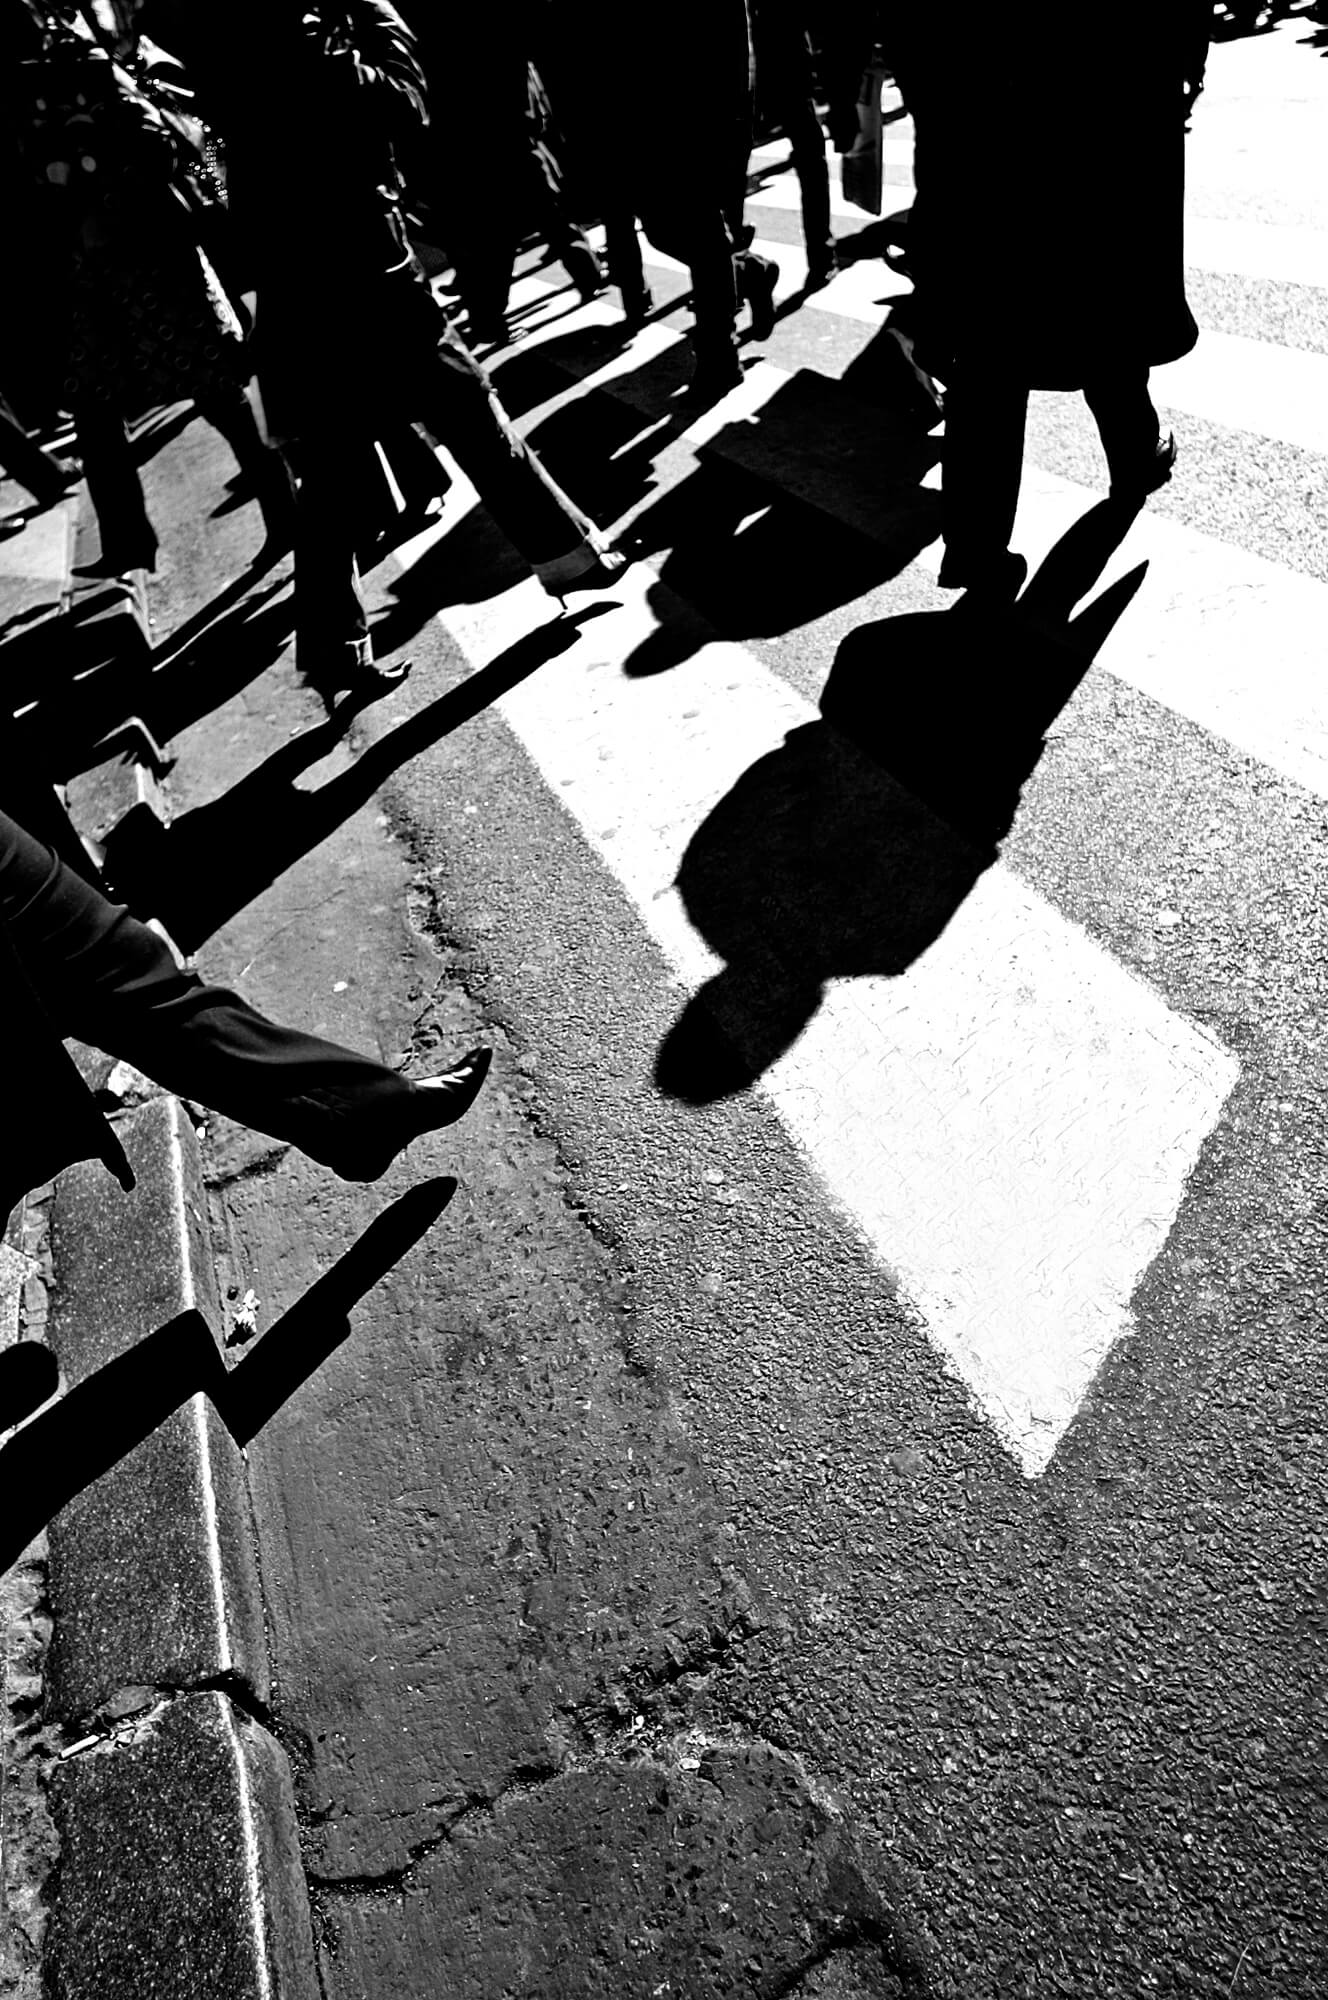 צילום רחוב בשחור לבן